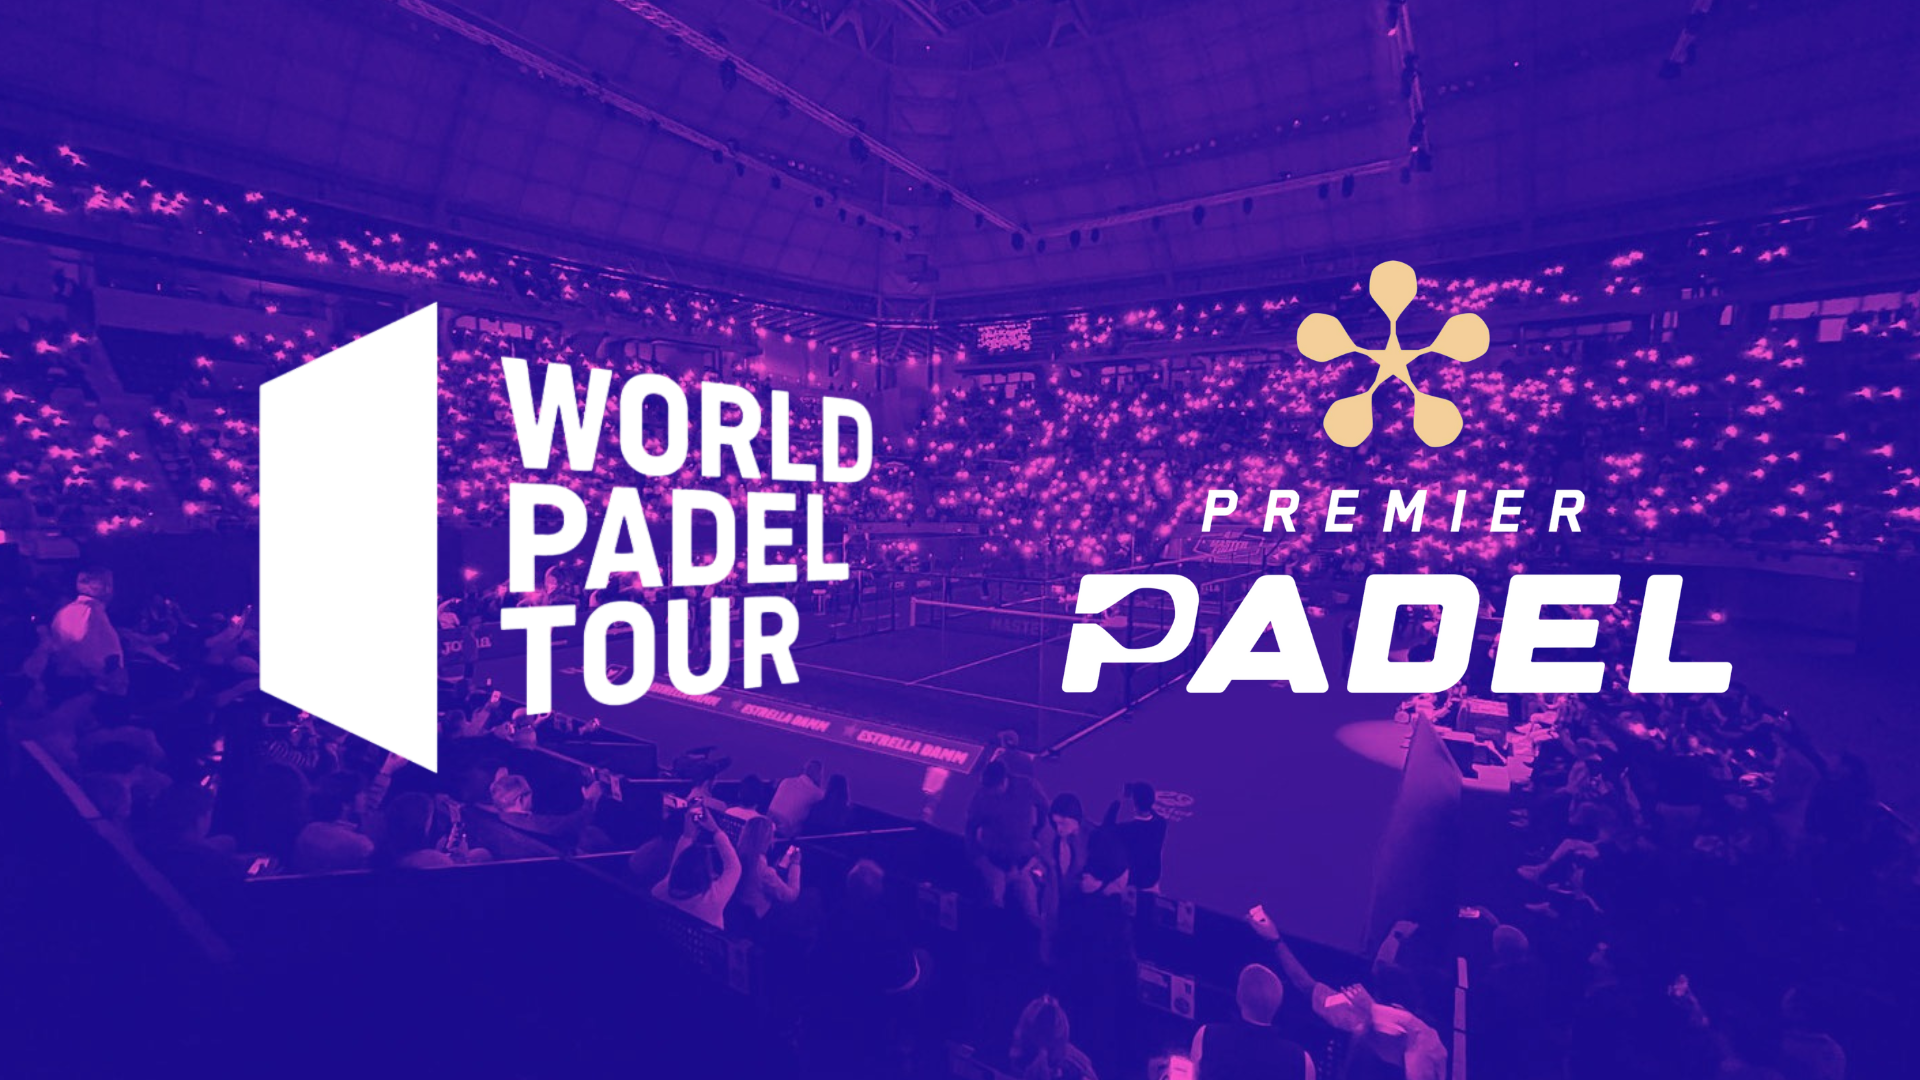 Le World Padel Tour et Premier Padel können sie wirklich eins sein?